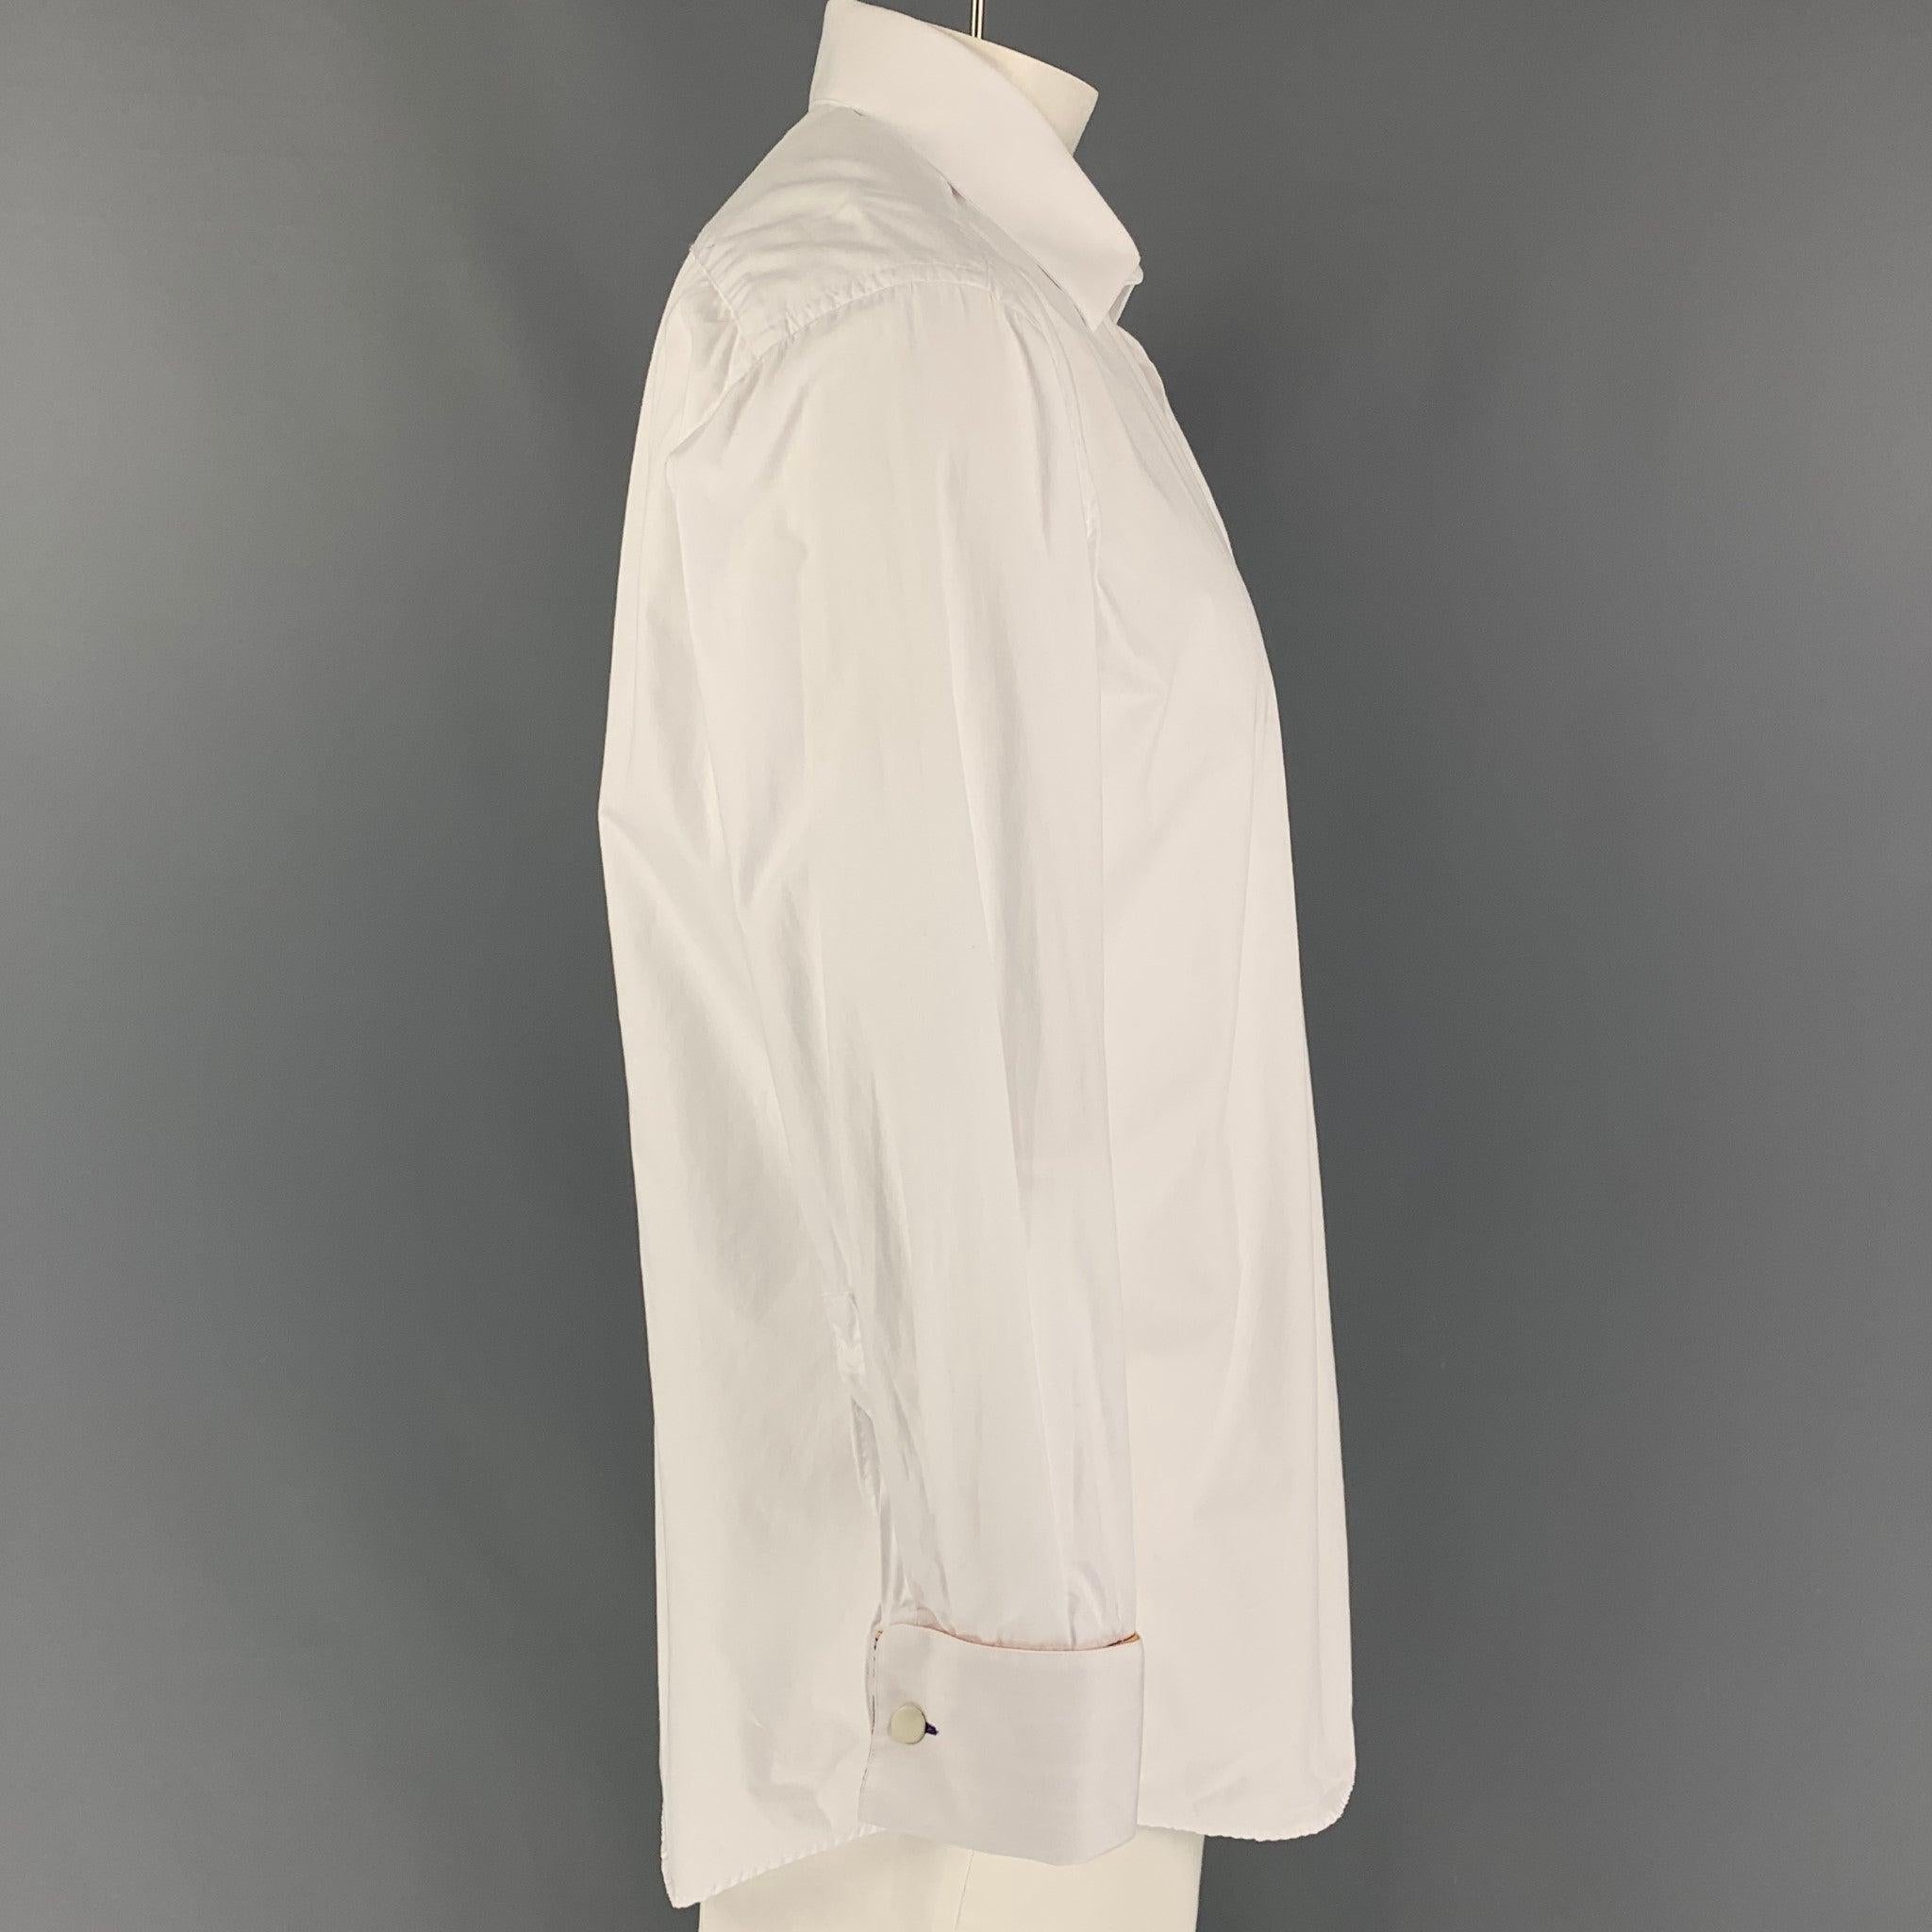 La chemise à manches longues de PAUL SMITH est en coton blanc et présente une poche plaquée, un col large, des poignets français et une fermeture à bouton. Ne comprend pas les boutons de manchette. Fabriquées en Italie.
Très bien
Etat d'occasion.